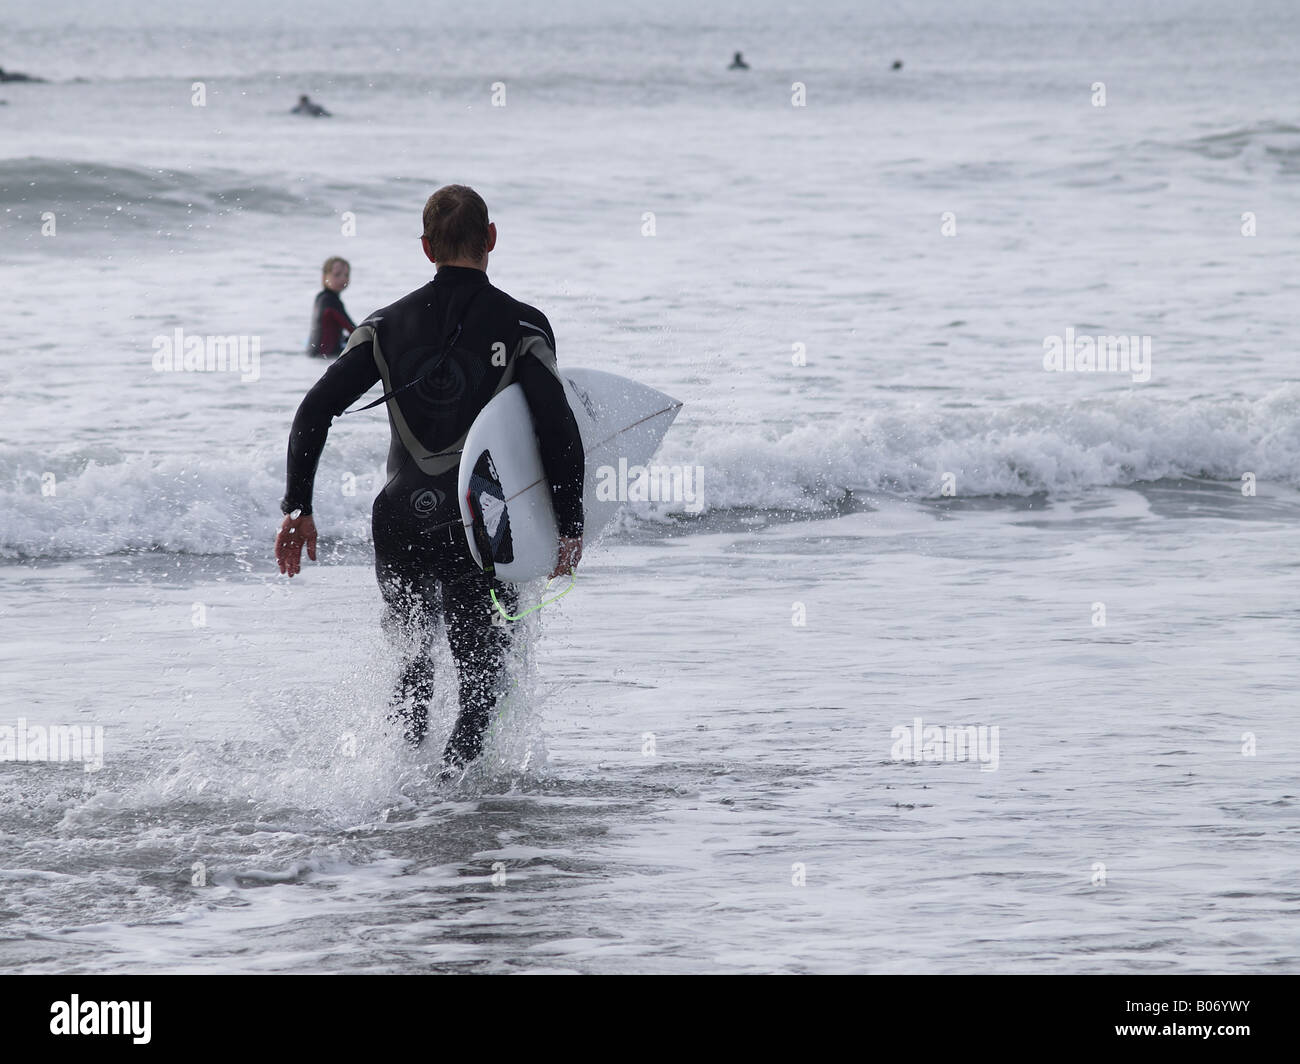 Porter une combinaison isothermique surfeur et tenant une planche de surf sous le bras, tournant dans la mer Banque D'Images